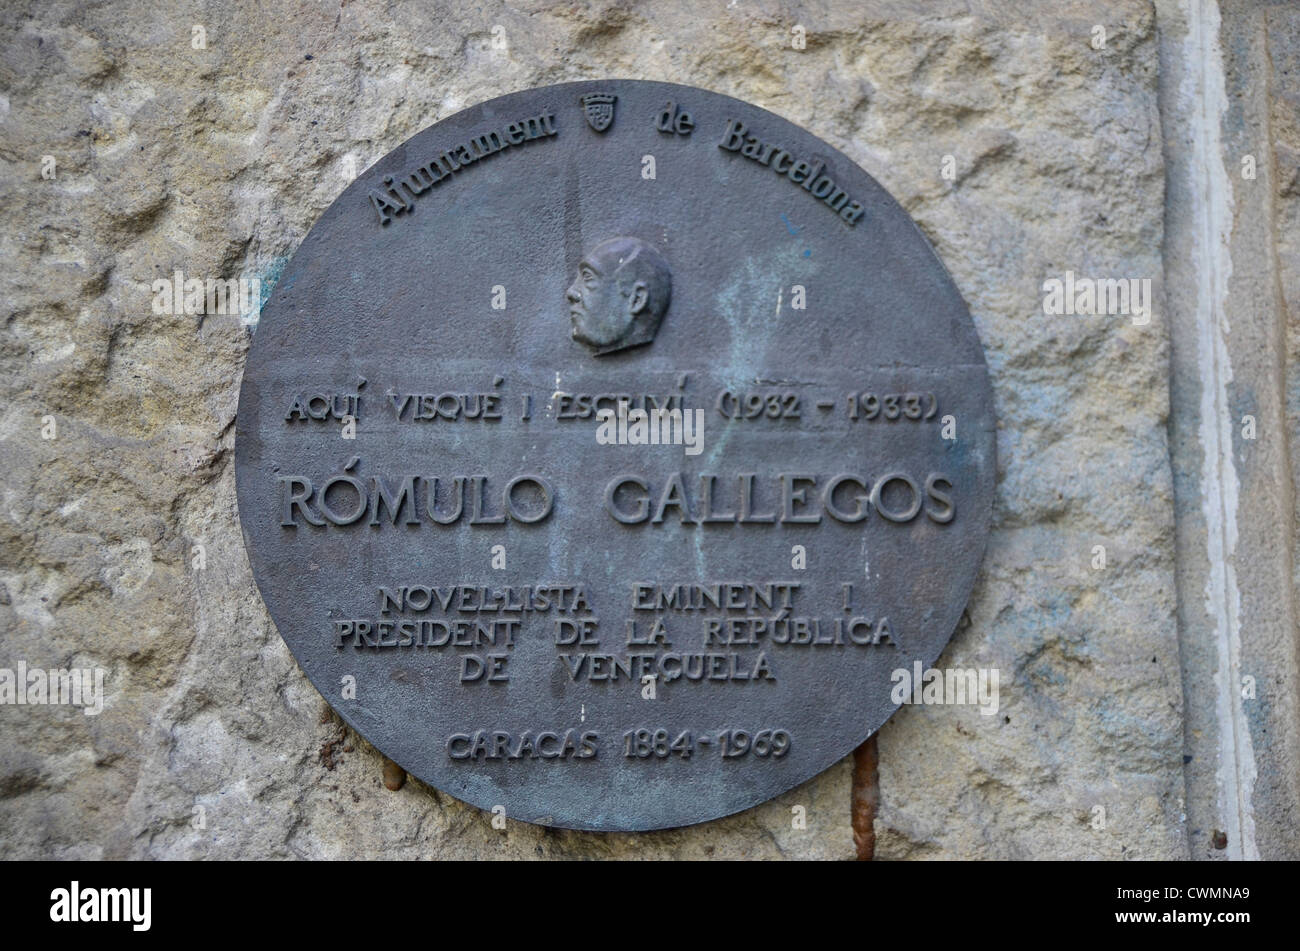 Gedenktafel von Rómulo Gallegos in Barcelona. Er war von 1884 bis 1969 Präsident von Venezuela. Er war auch ein Autor von Romanen. Stockfoto